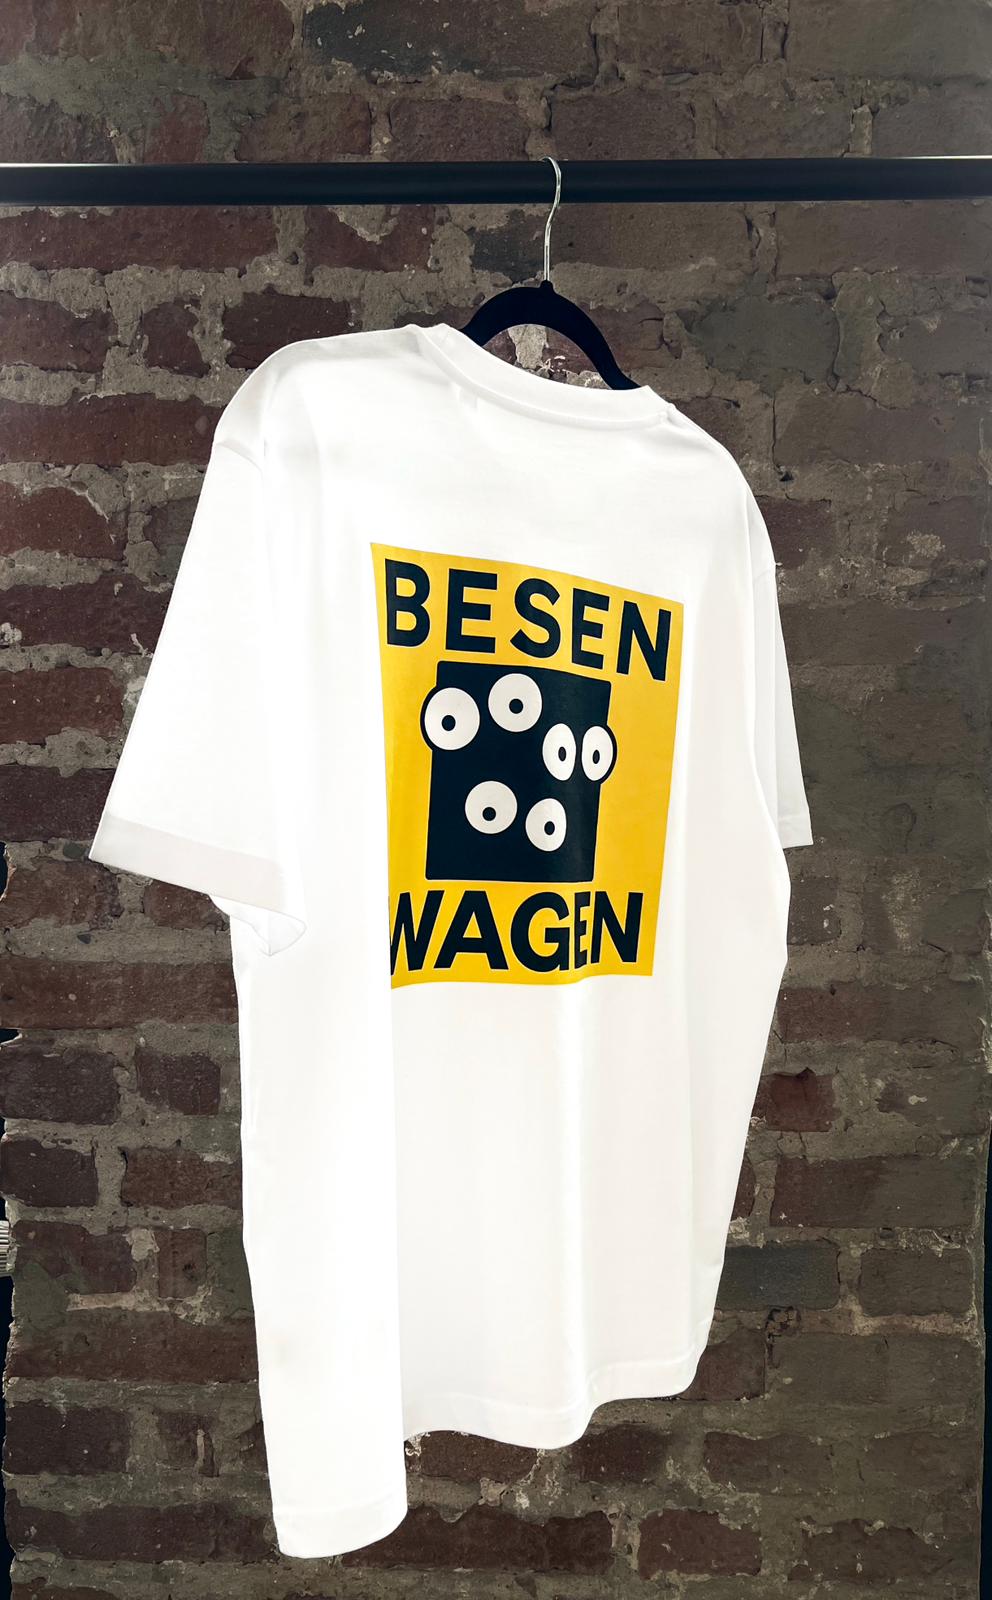 Besenwagen T-Shirt - XXL